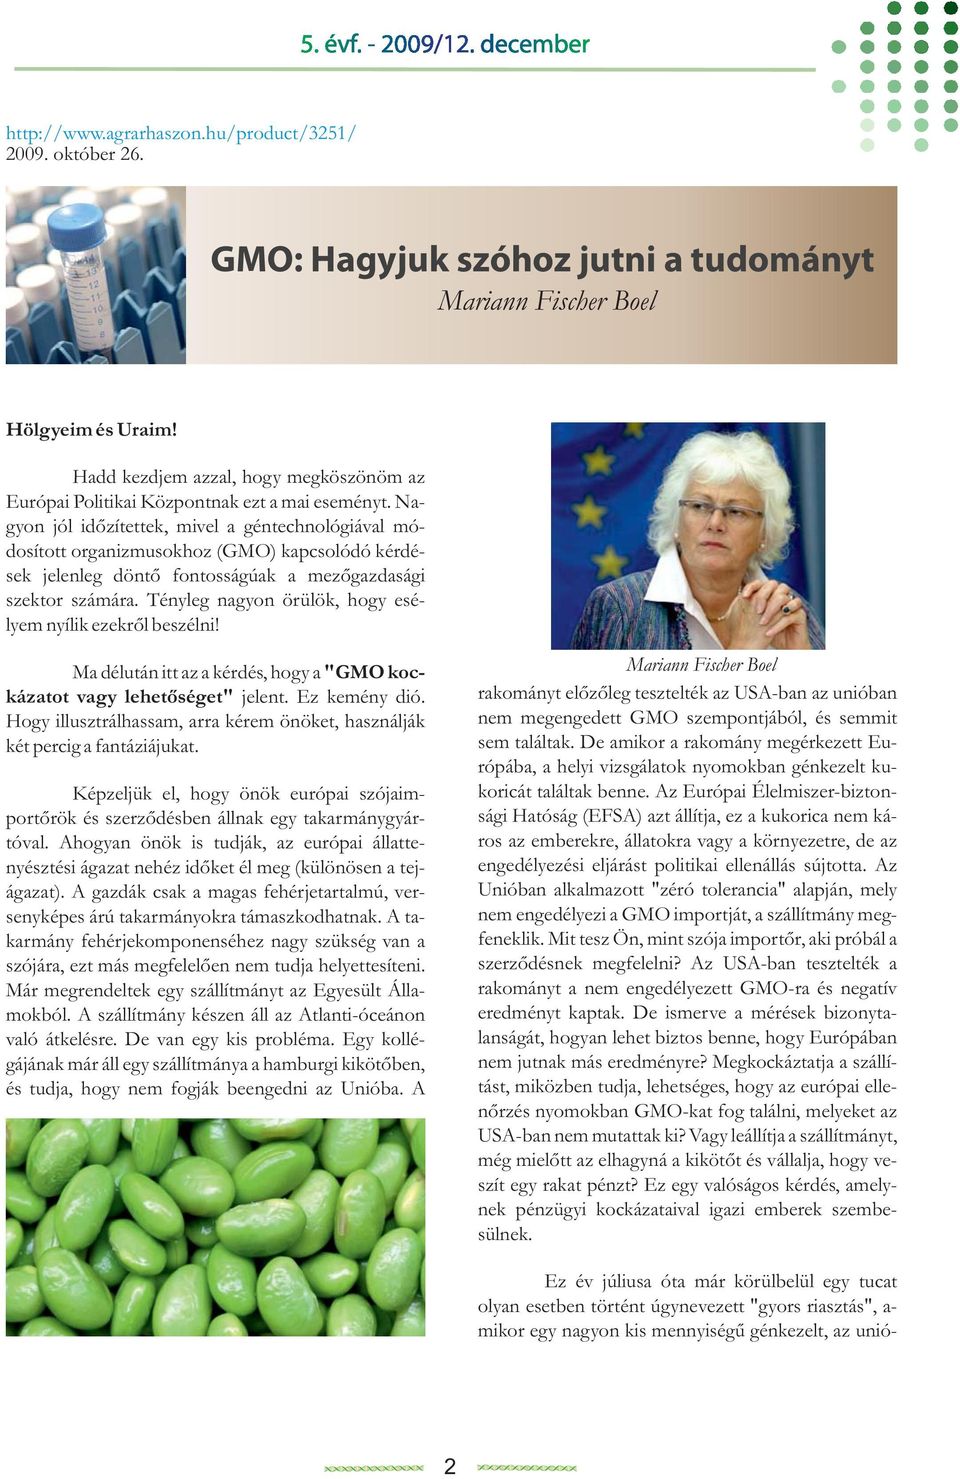 Na- gyon jól időzítettek, mivel a géntechnológiával módosított organizmusokhoz (GMO) kapcsolódó kérdések jelenleg döntő fontosságúak a mezőgazdasági szektor számára.